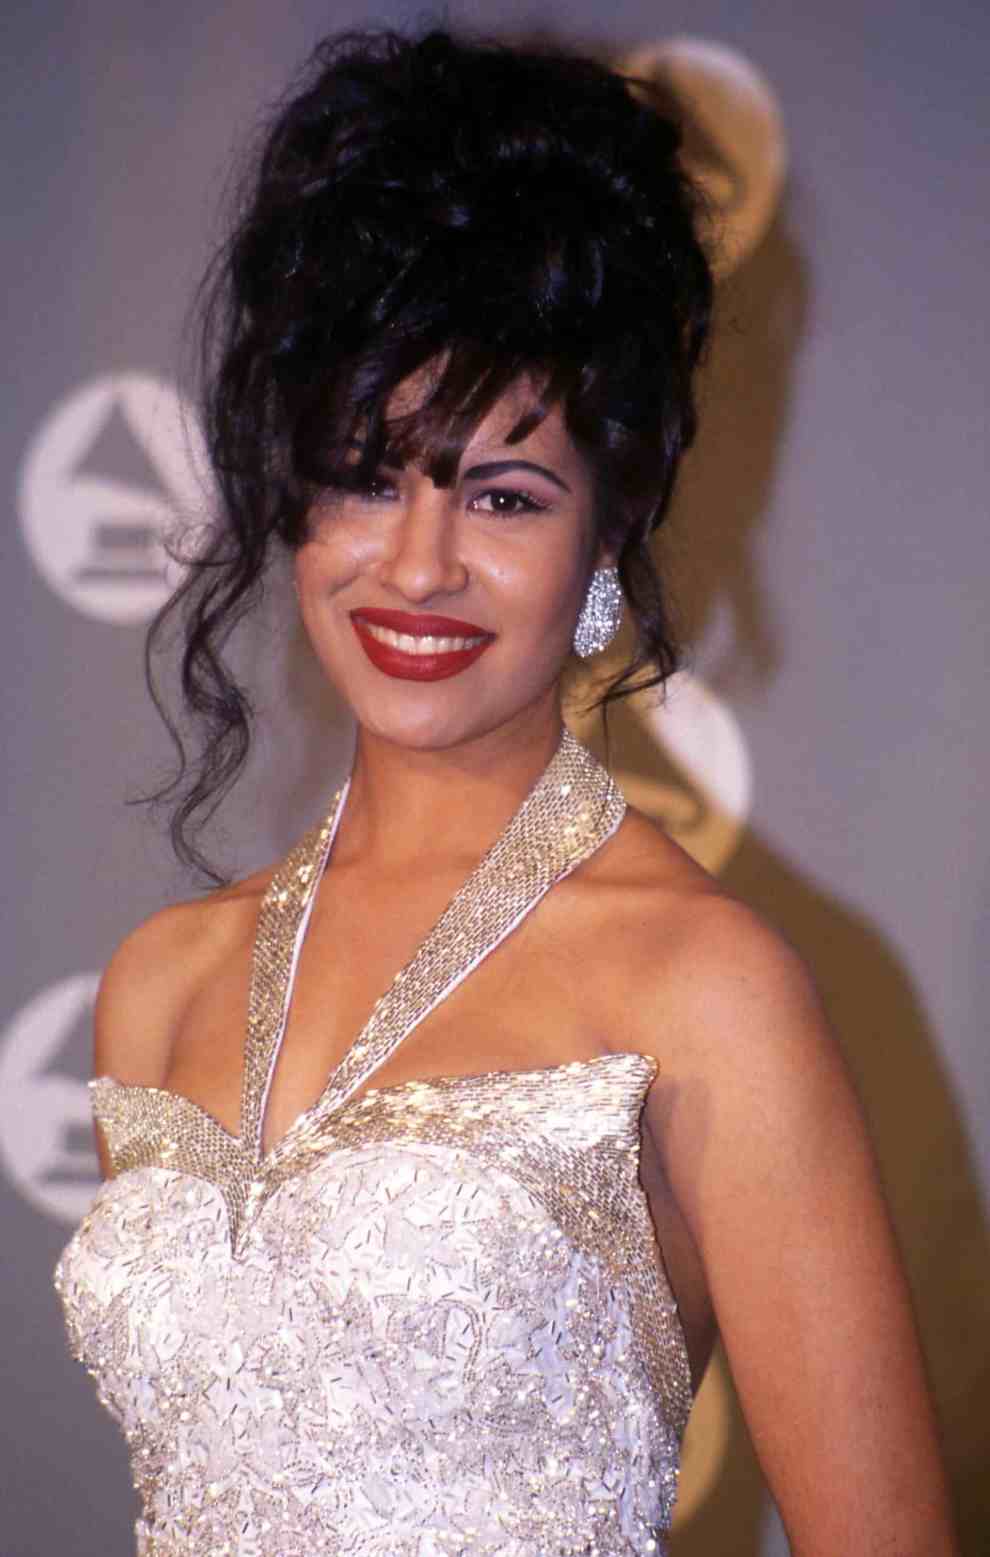 Selena attending the grammy awards